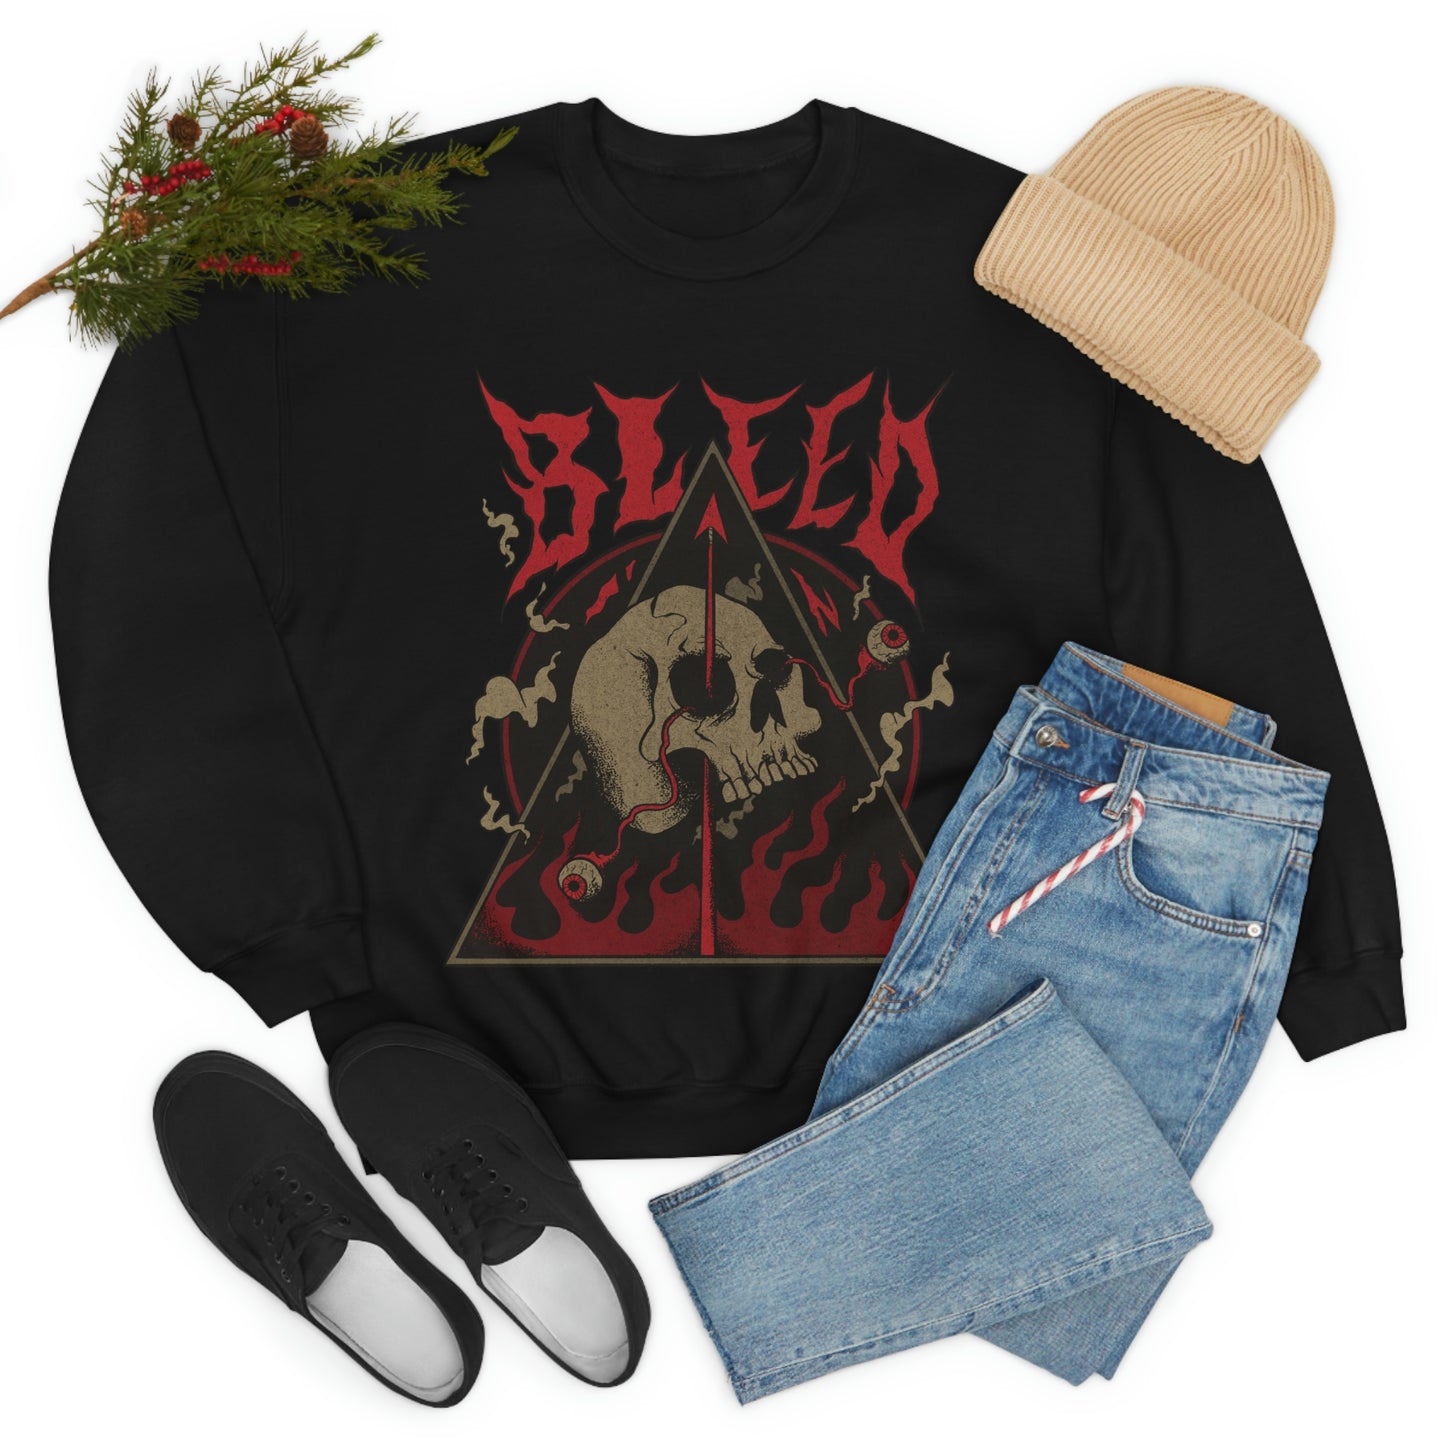 SKULL METAL BAND Goth Aesthetic Bleed Sweatshirt